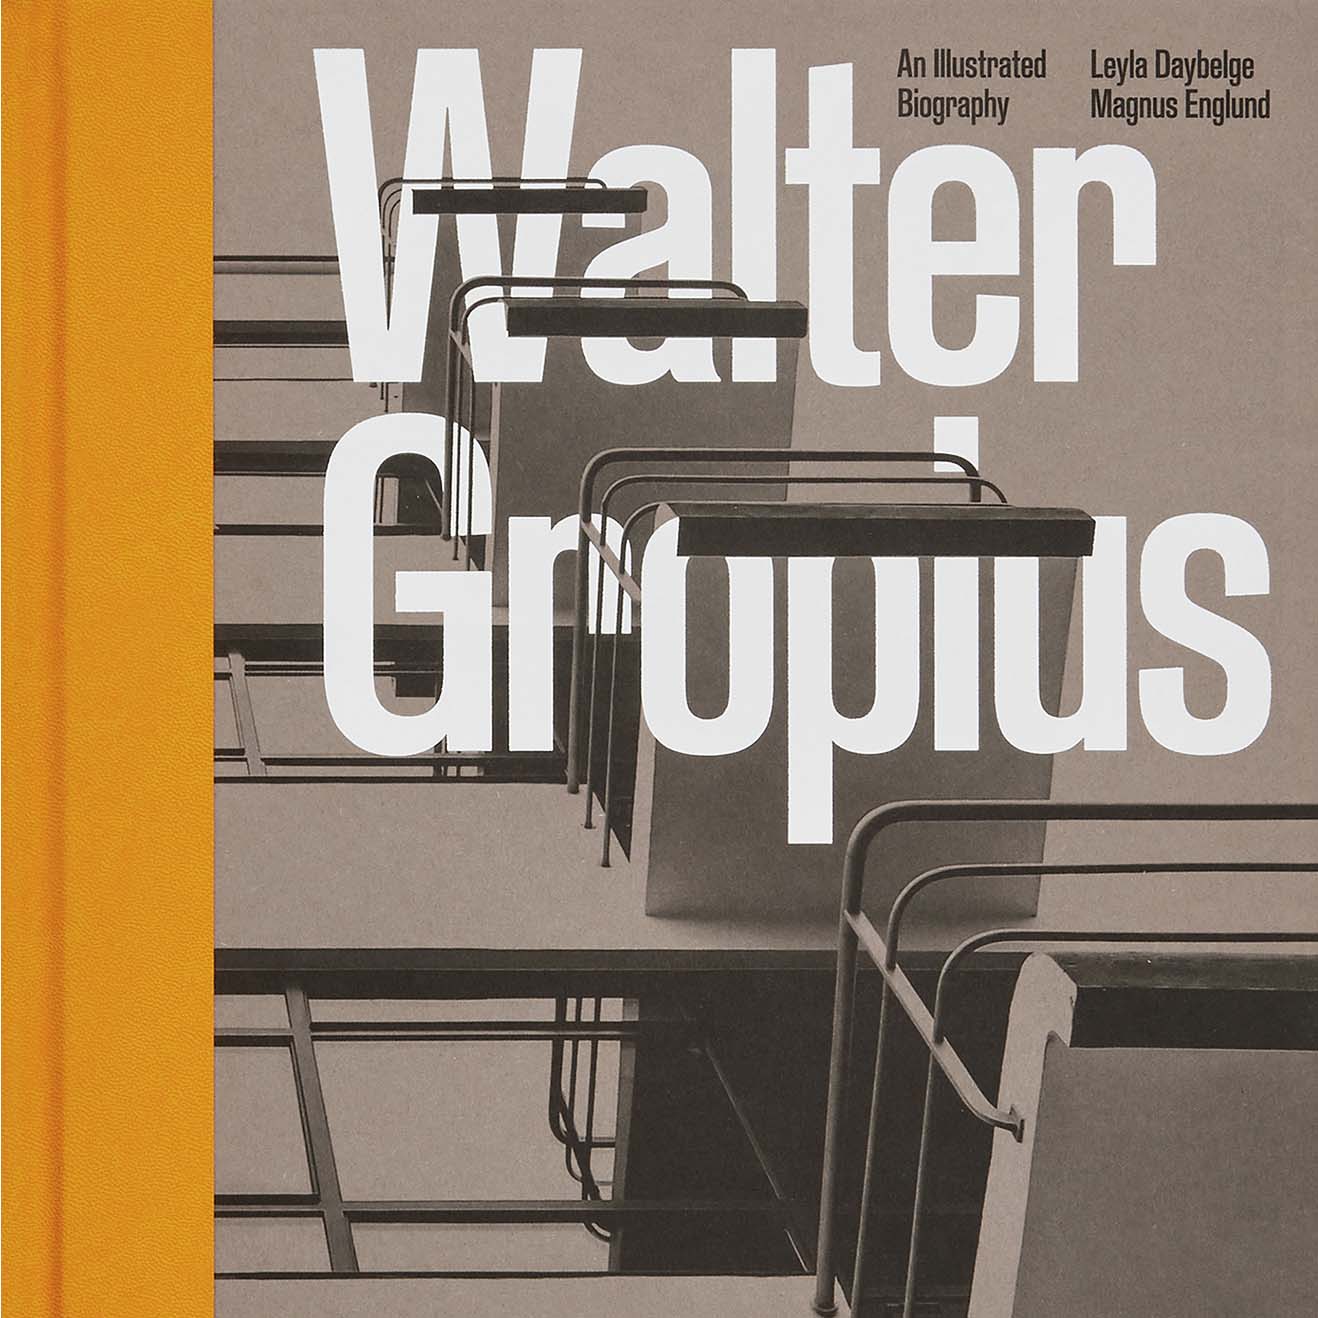 Imagen de Walter Gropius - Una biografía ilustrada